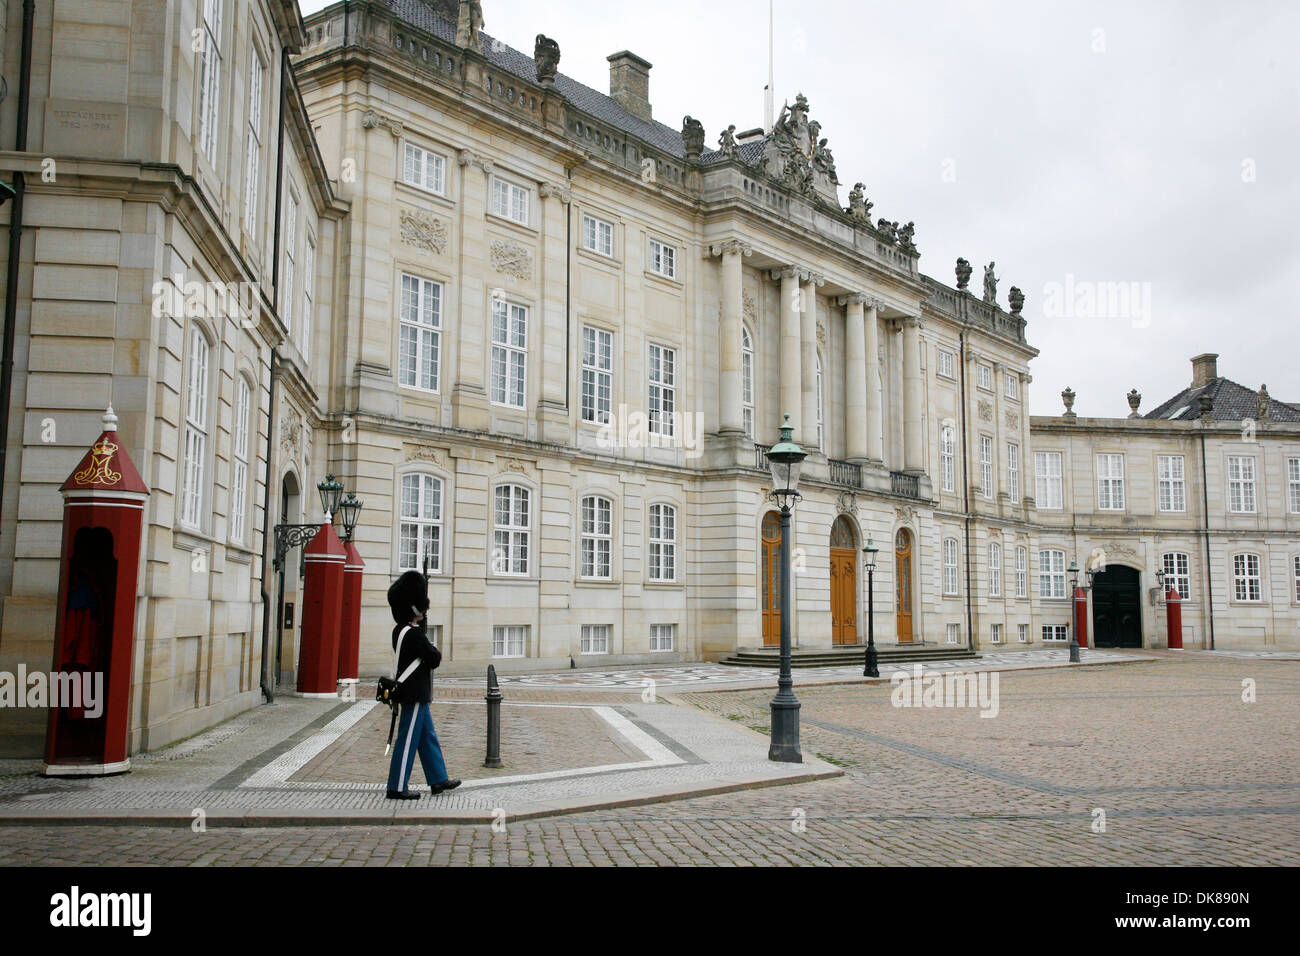 Amalienborg royal palace, Copenhagen, Denmark. Stock Photo